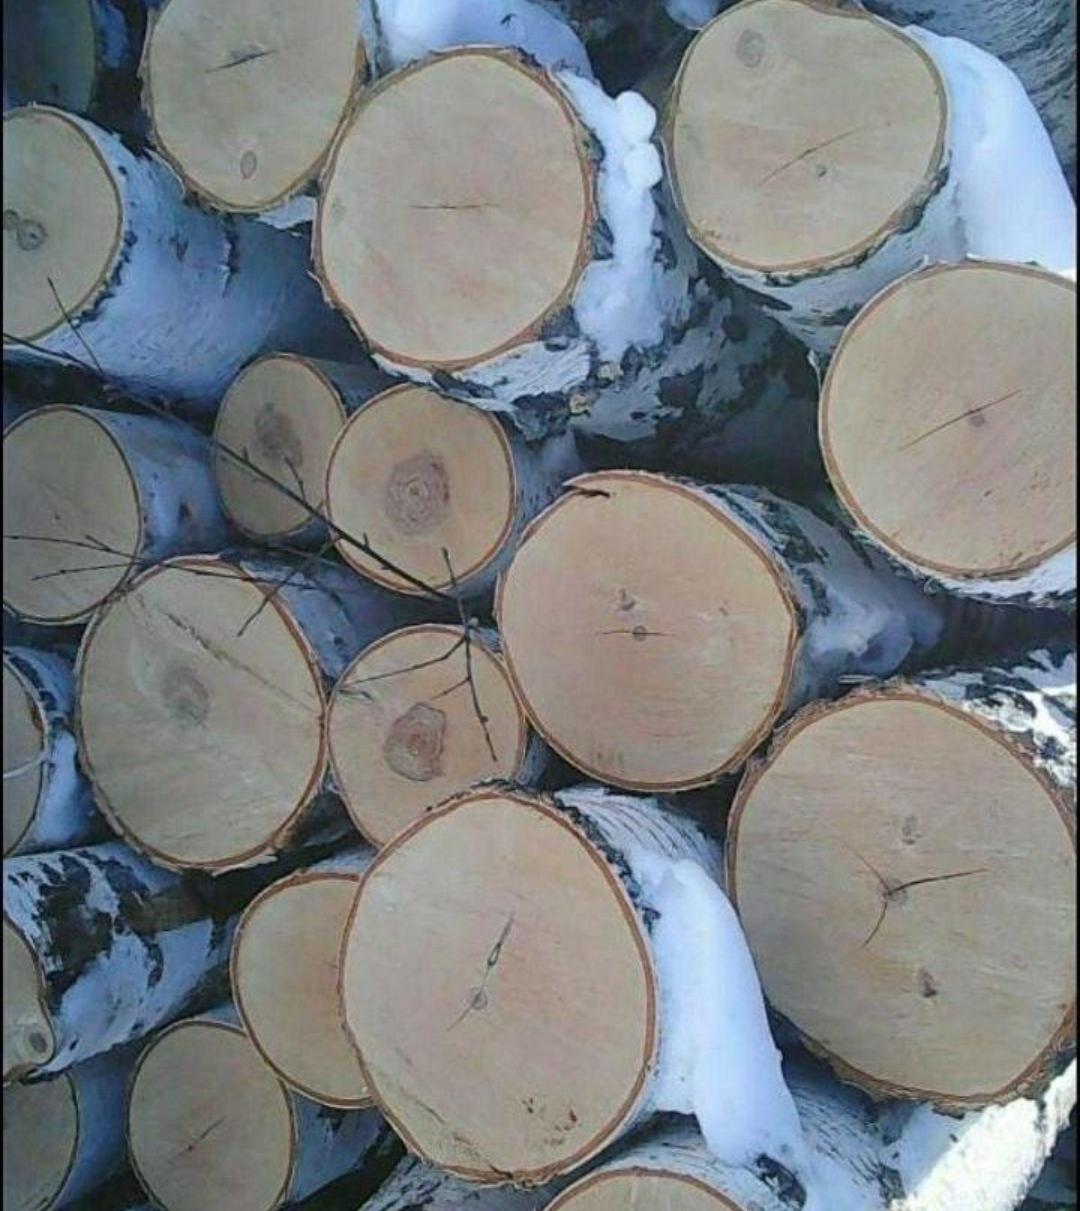 Березовые дрова